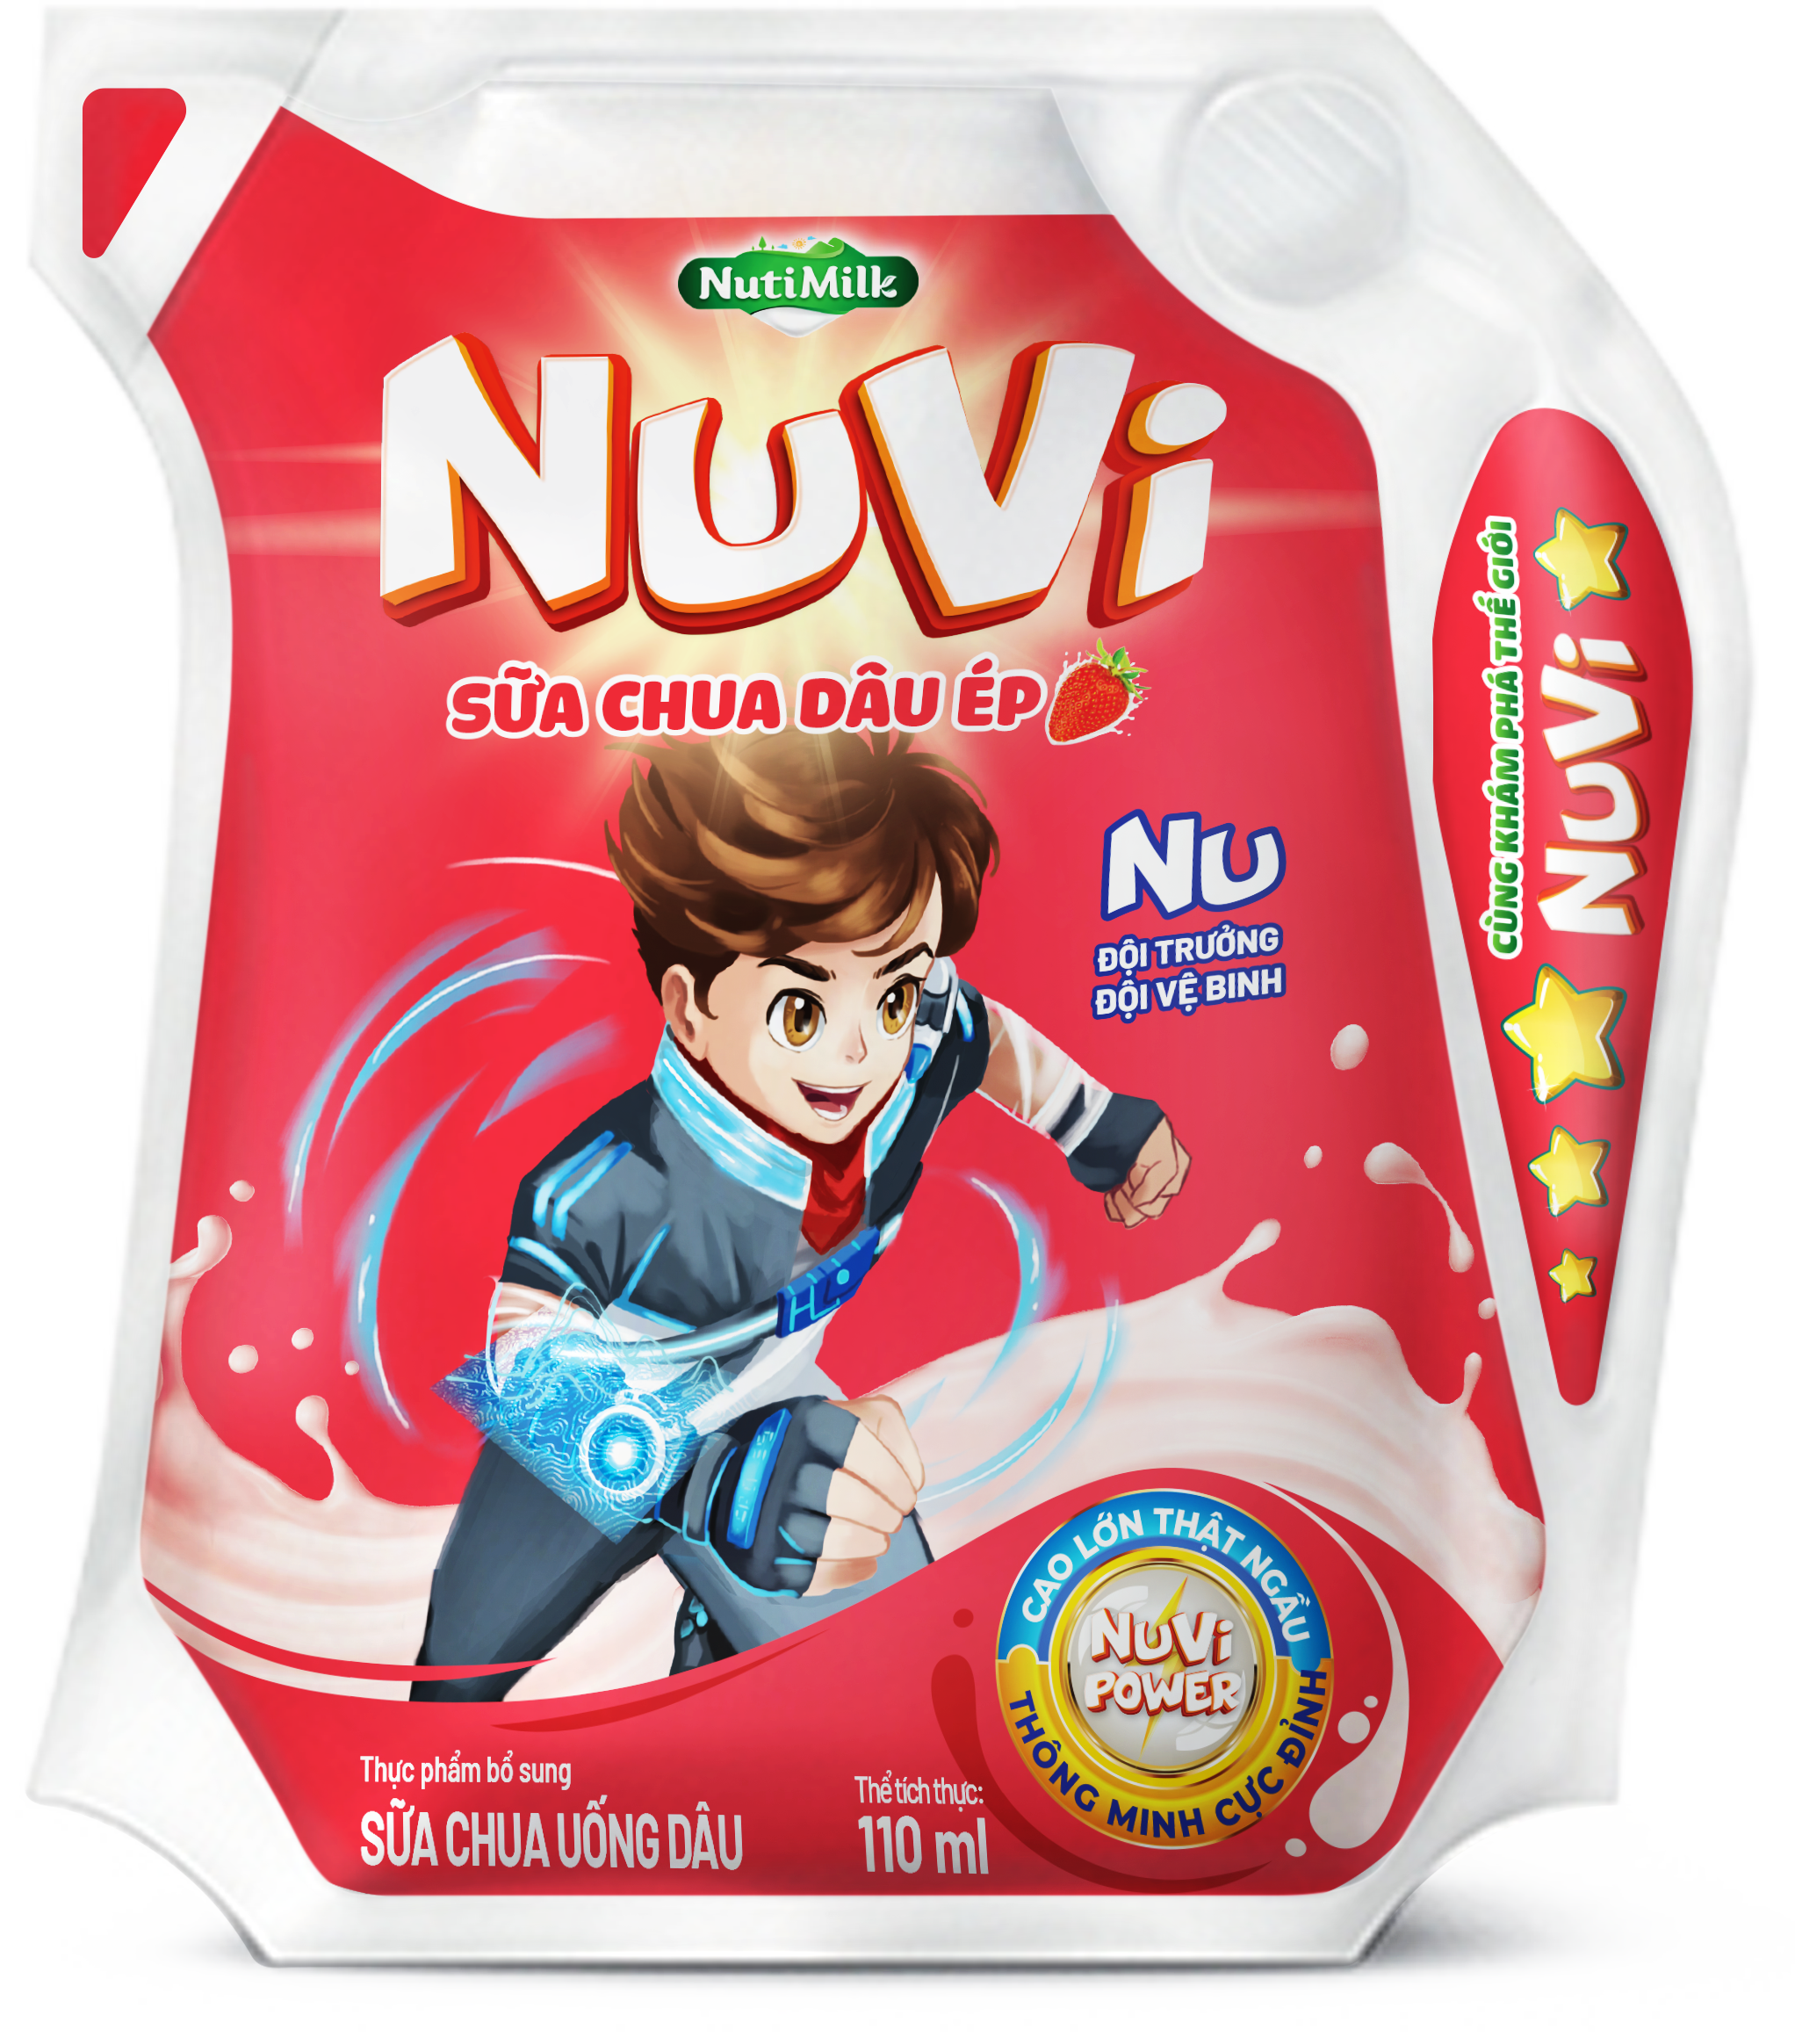 Thùng 24 túi NuVi Sữa chua Dâu Ép túi NuVi Power 110 ml TU.NDT110TI NUTIFOOD